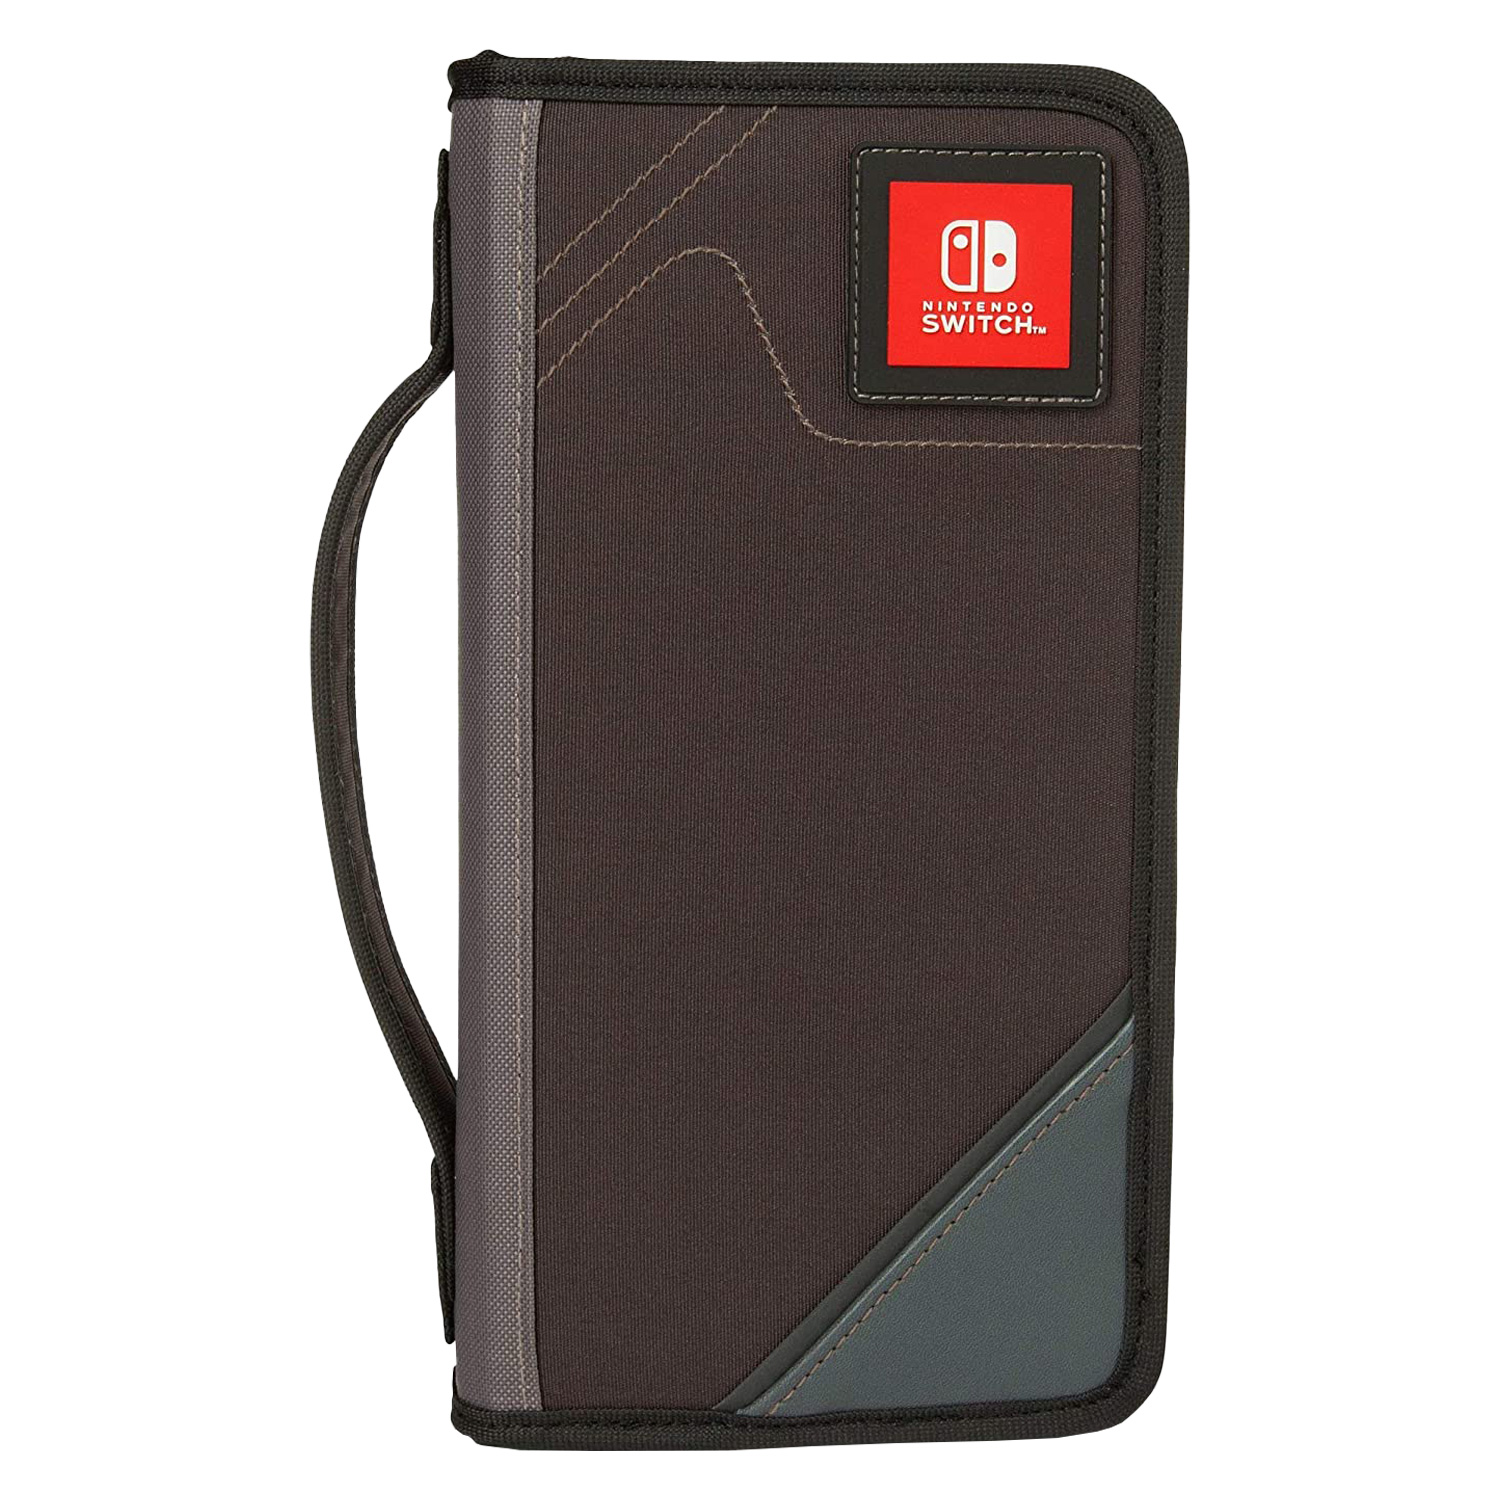 Case Protetor Power A Folio para Nintendo Switch - (PWA-A-02318)